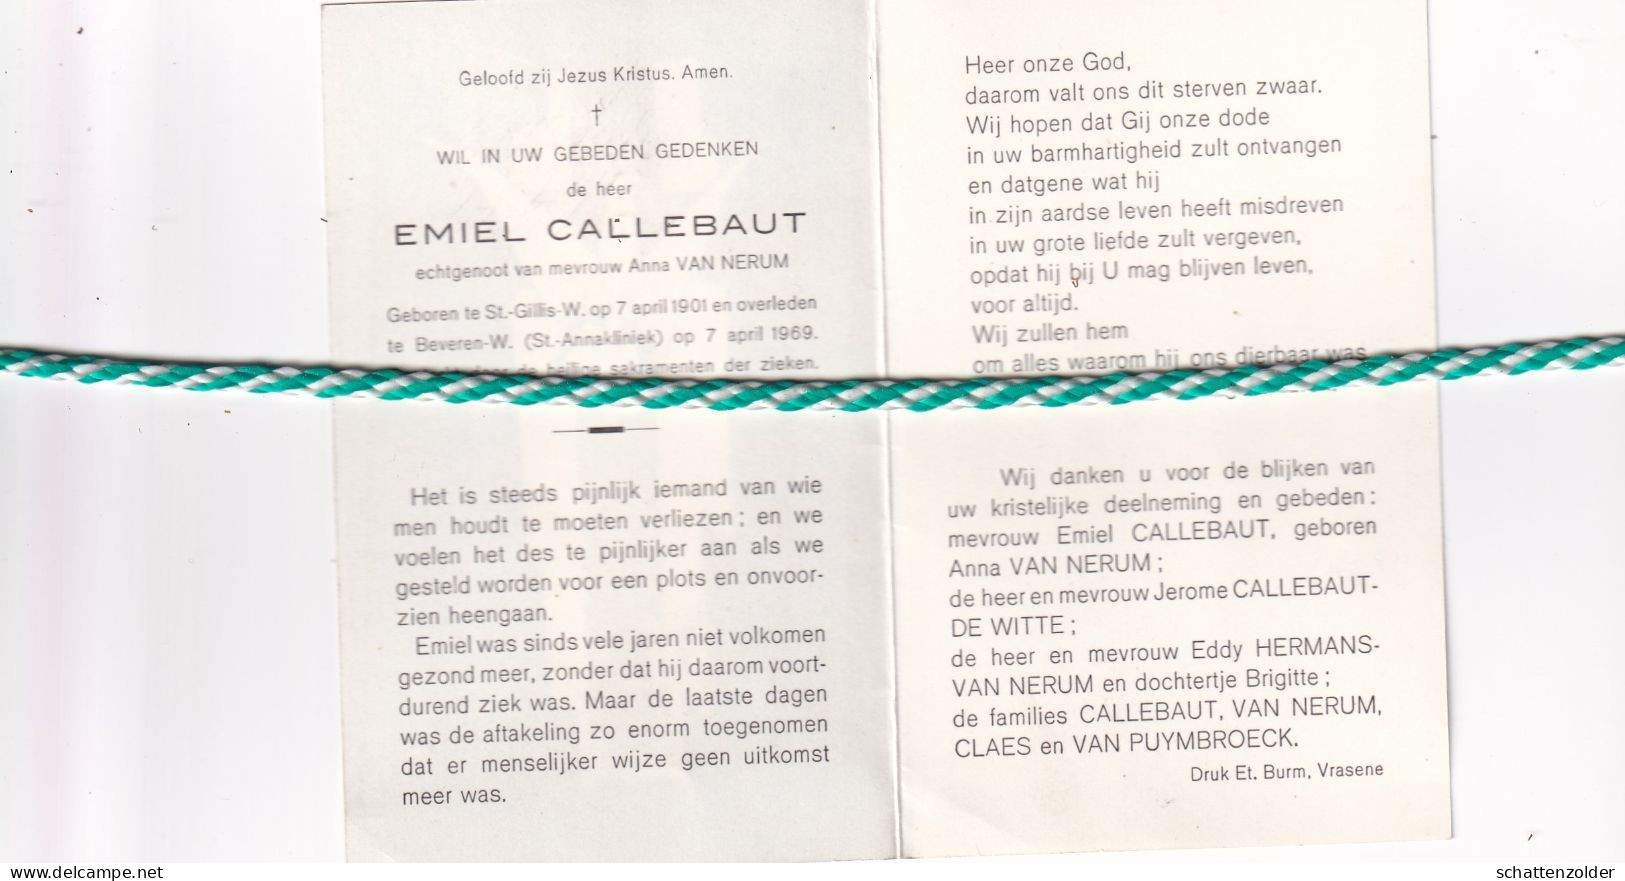 Emiel Callebaut-Van Nerum, Sint-Gillis-Waas 1901, Beveren-Waas 1969 - Overlijden